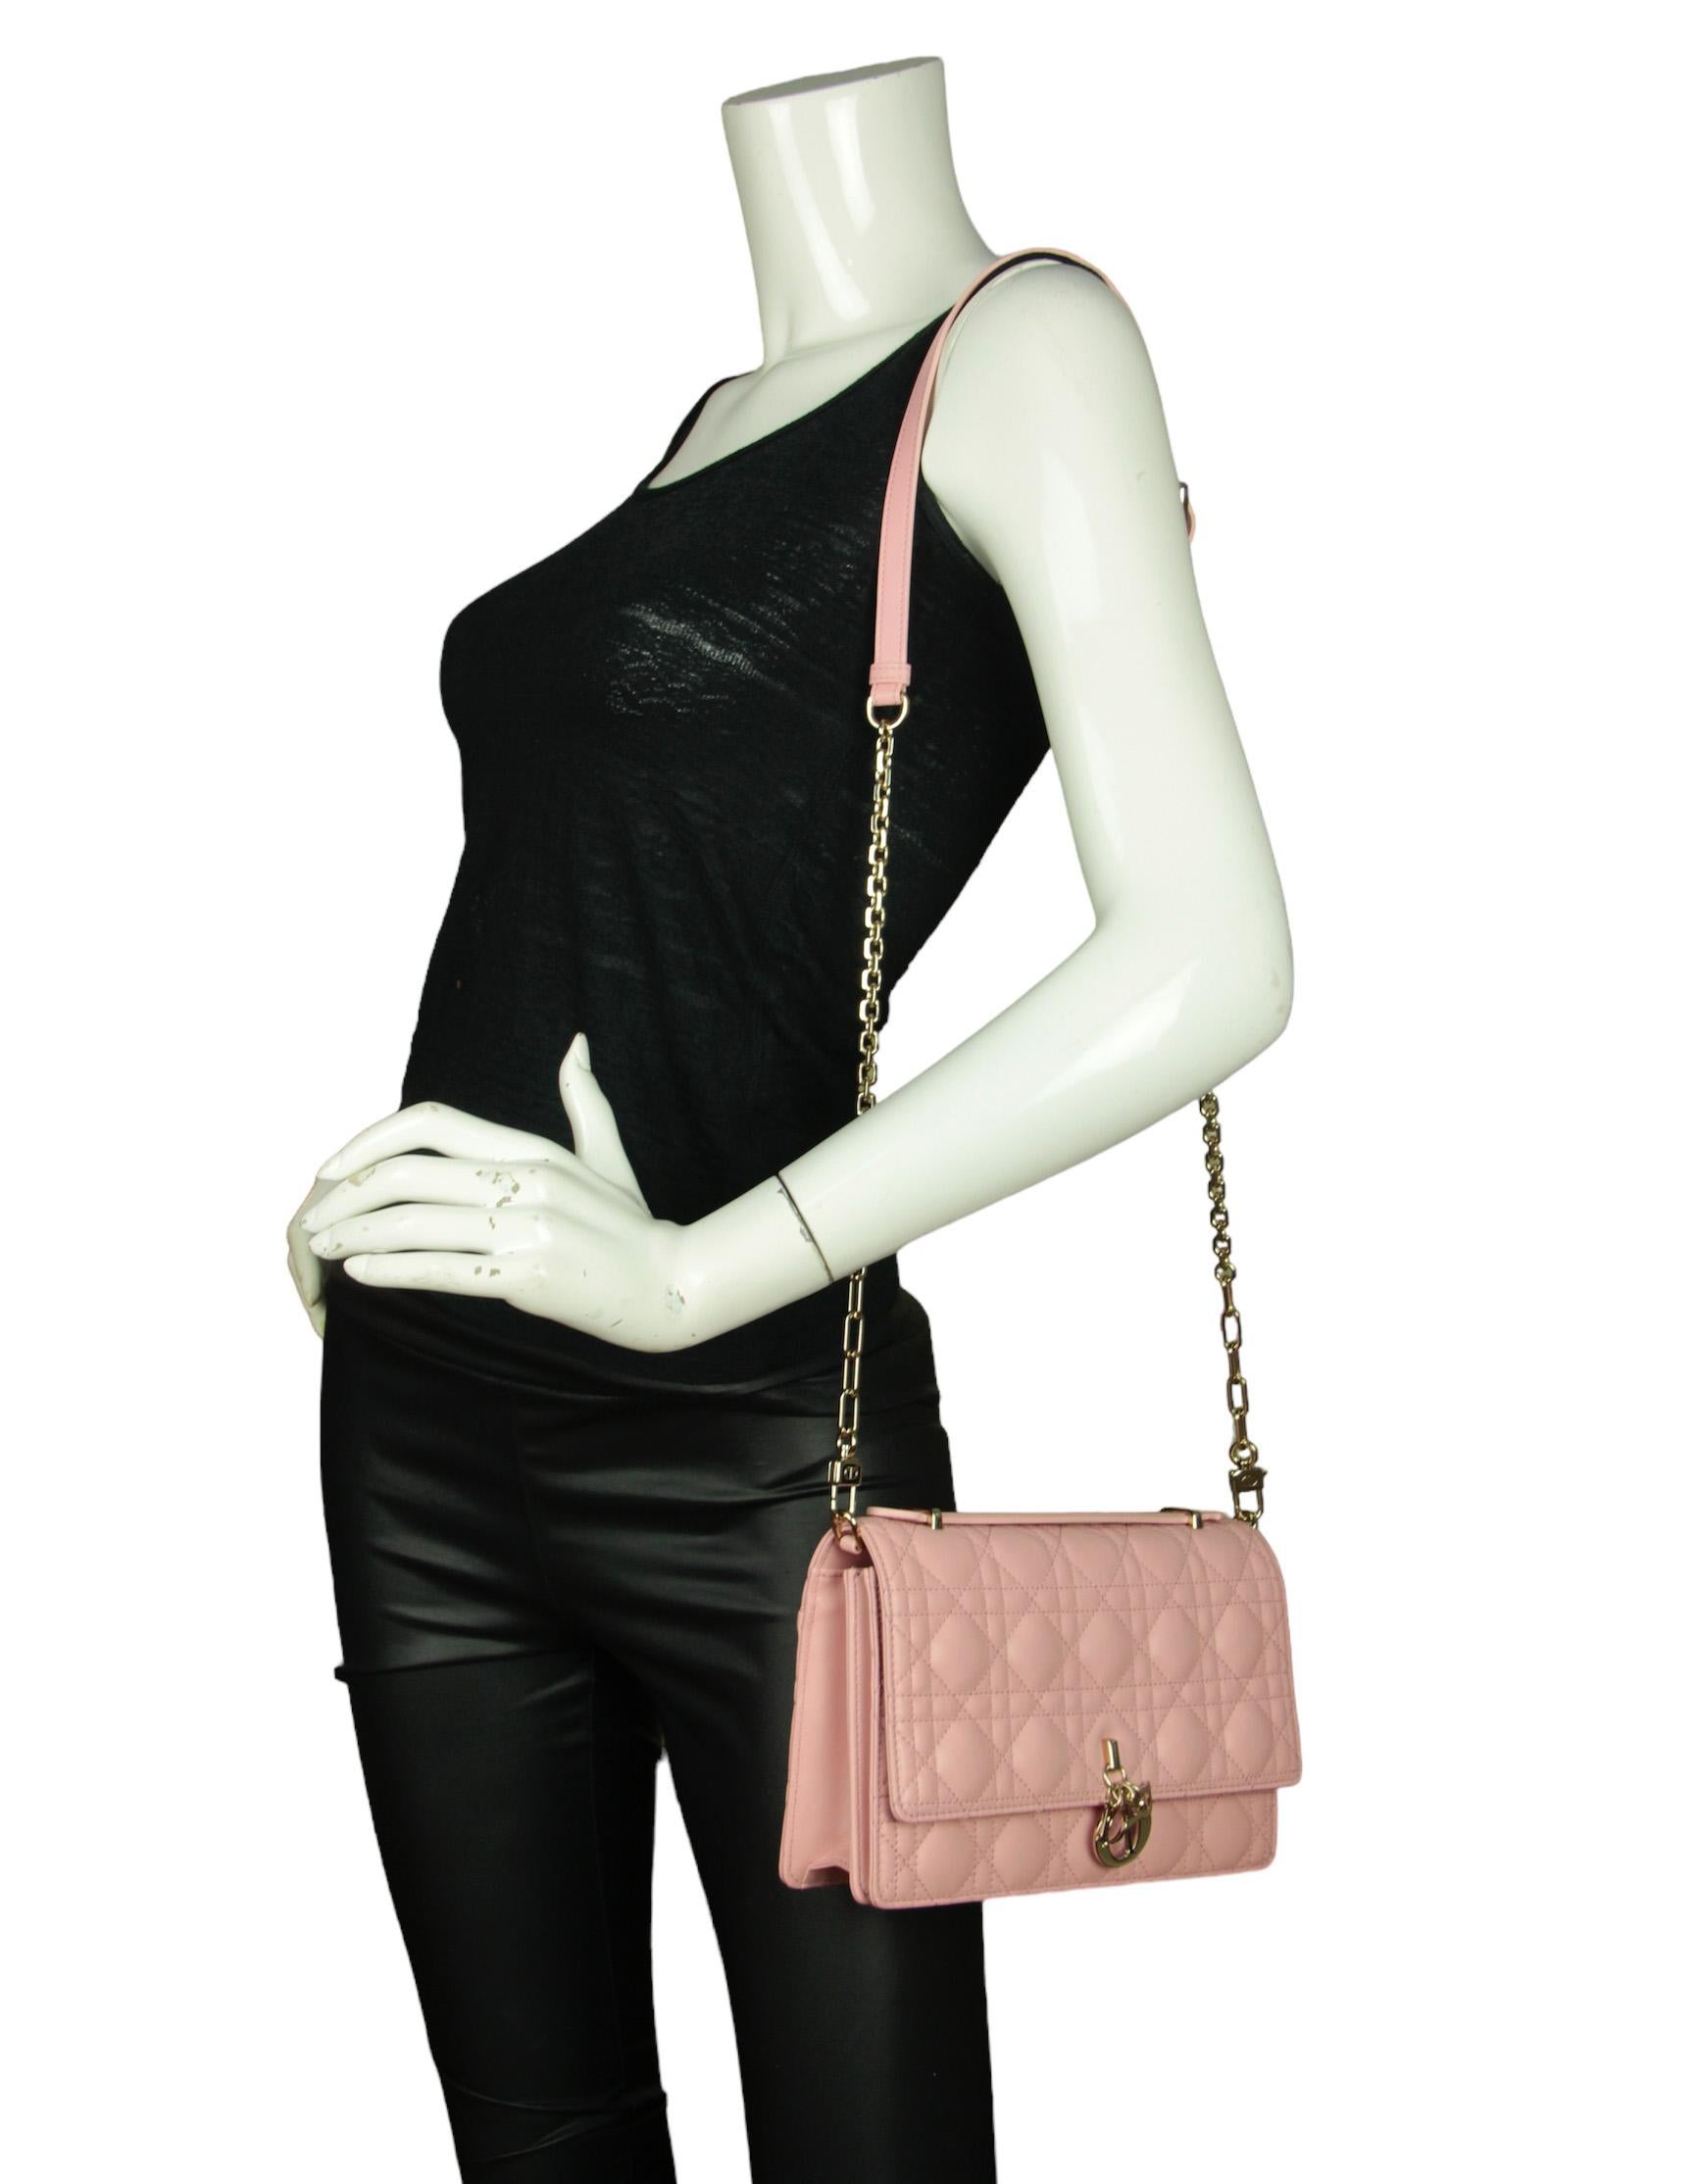 Christian Dior Melocoton Pink Cannage Lambskin Miss Dior Top Handle Bag. Le sac peut être porté comme une pochette, avec une poignée sur le dessus ou avec une bandoulière. 

Fabriqué en : Italie
Année de production : 2023
Couleur : rose